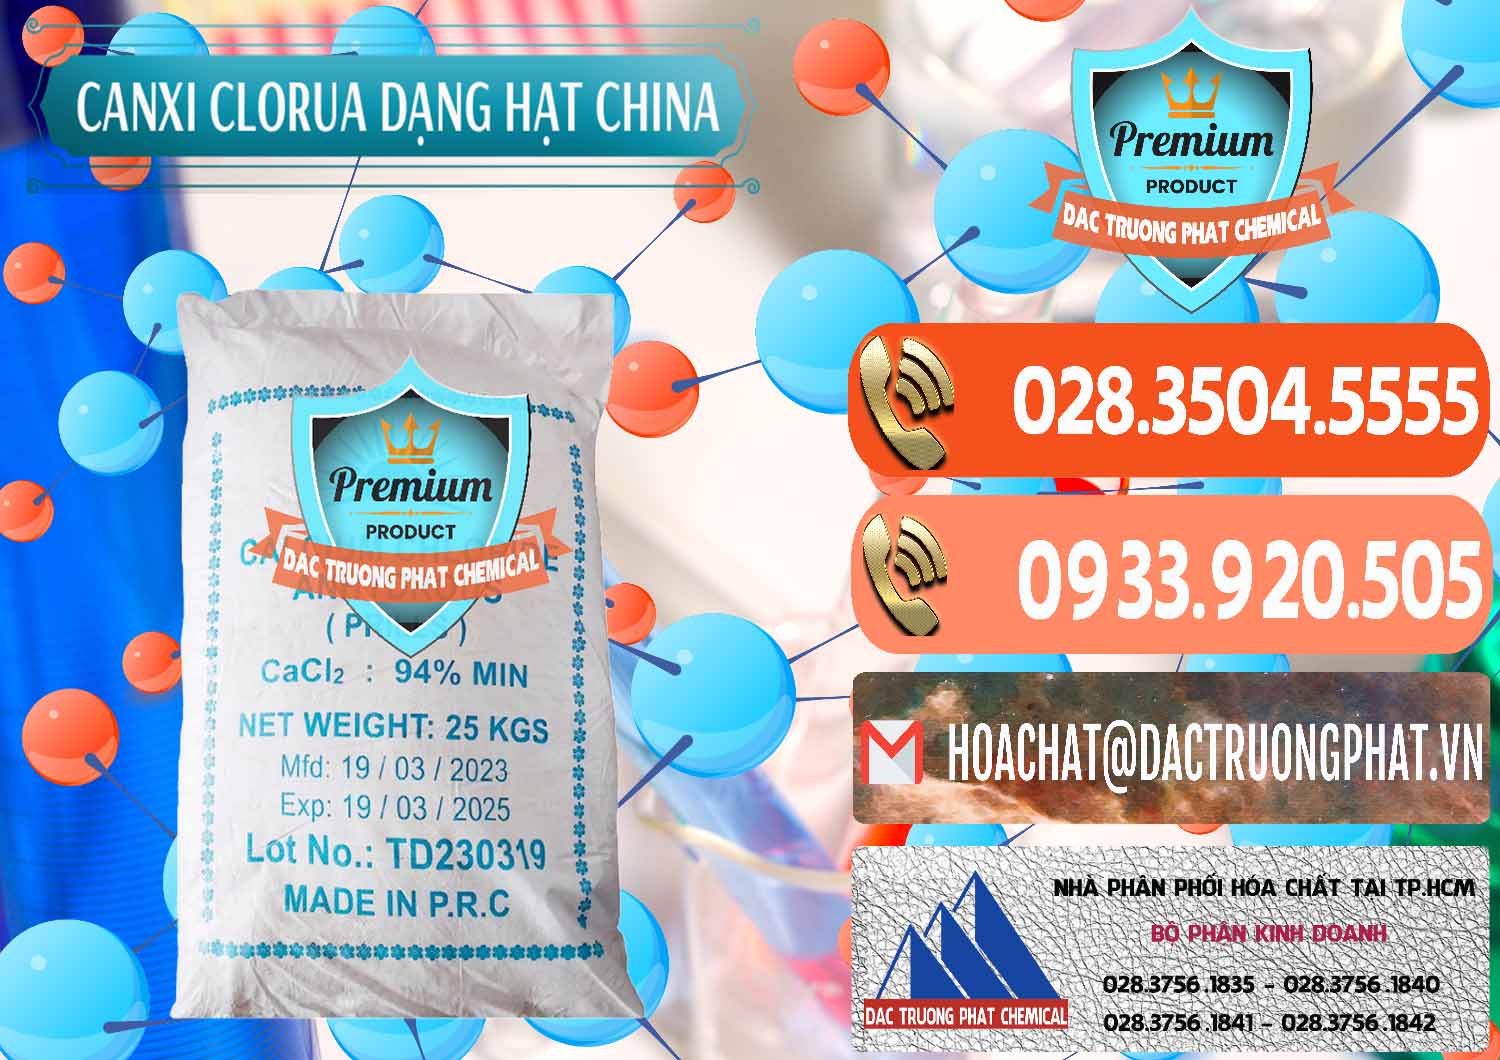 Công ty chuyên bán - cung ứng CaCl2 – Canxi Clorua 94% Dạng Hạt Trung Quốc China - 0373 - Nơi cung cấp _ phân phối hóa chất tại TP.HCM - hoachatmientay.com